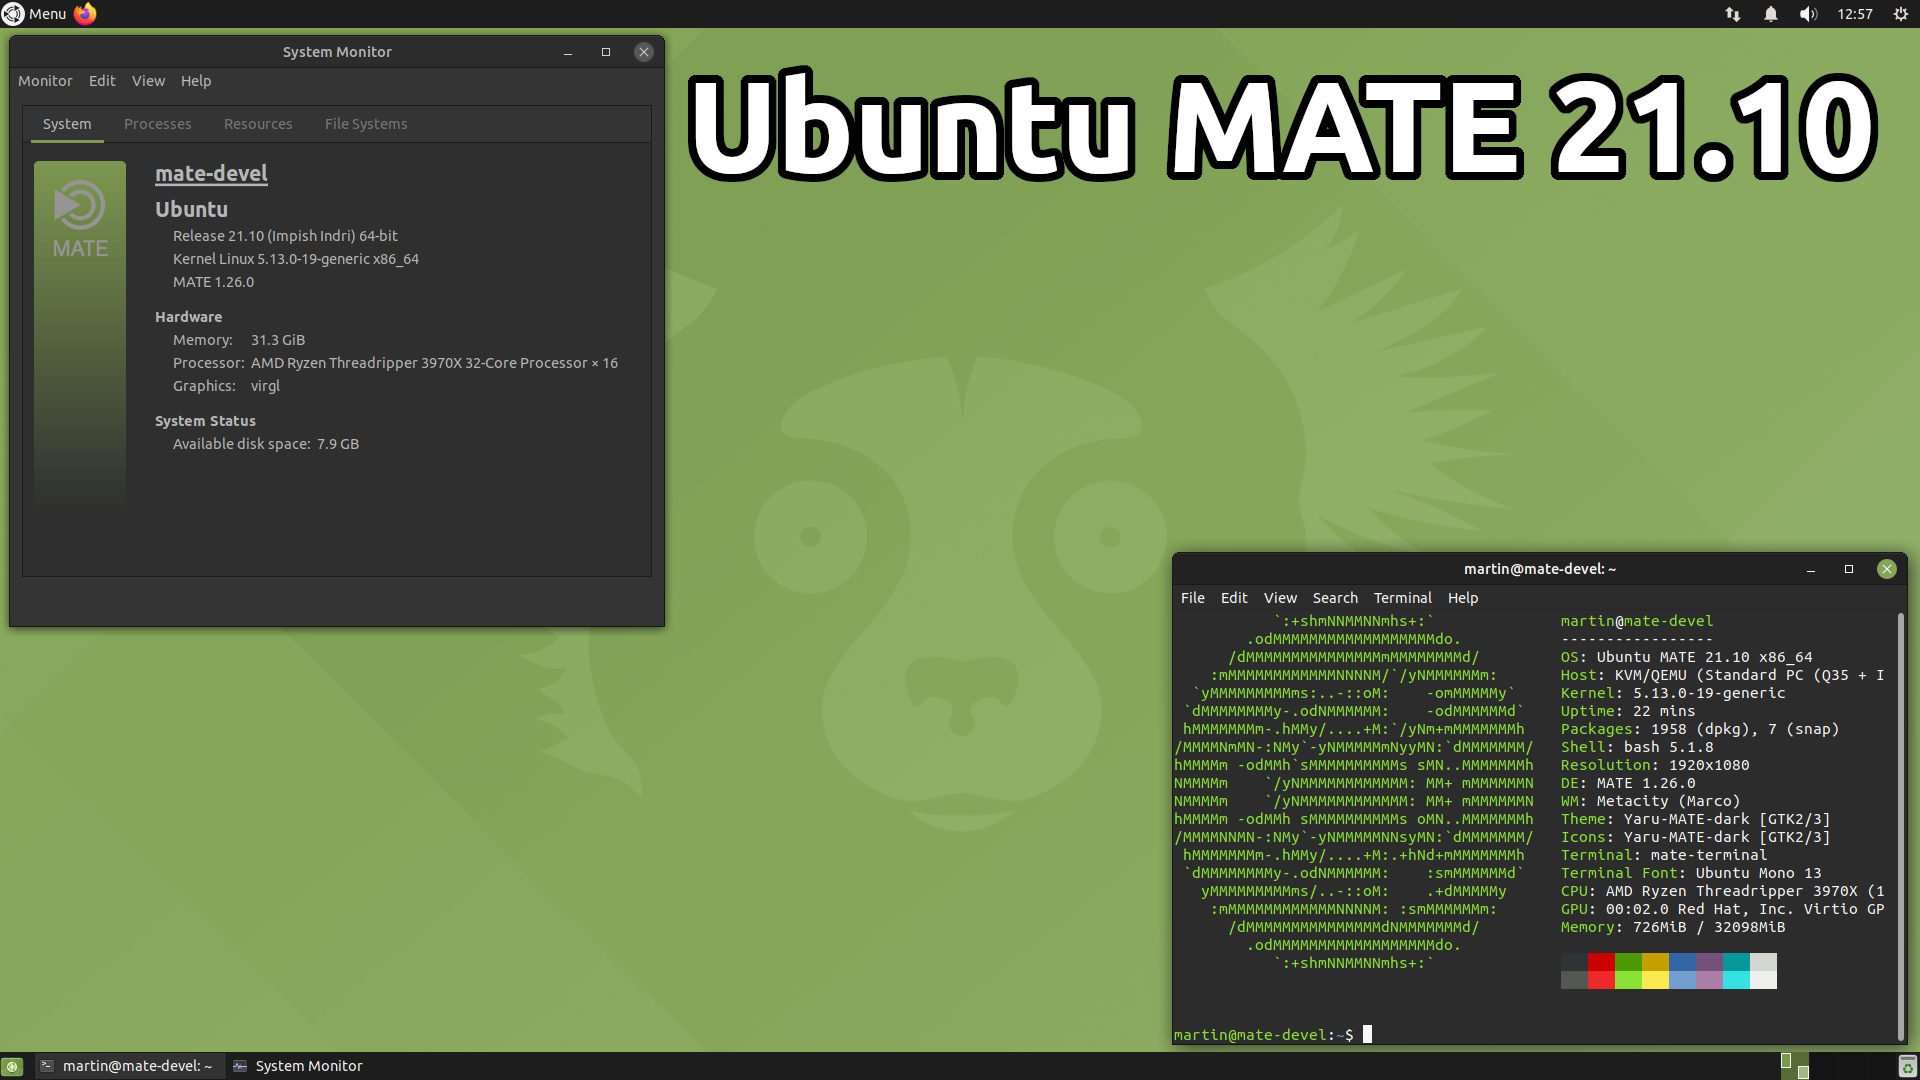 Ubuntu MATE 21.10 Release Notes | Ubuntu MATE